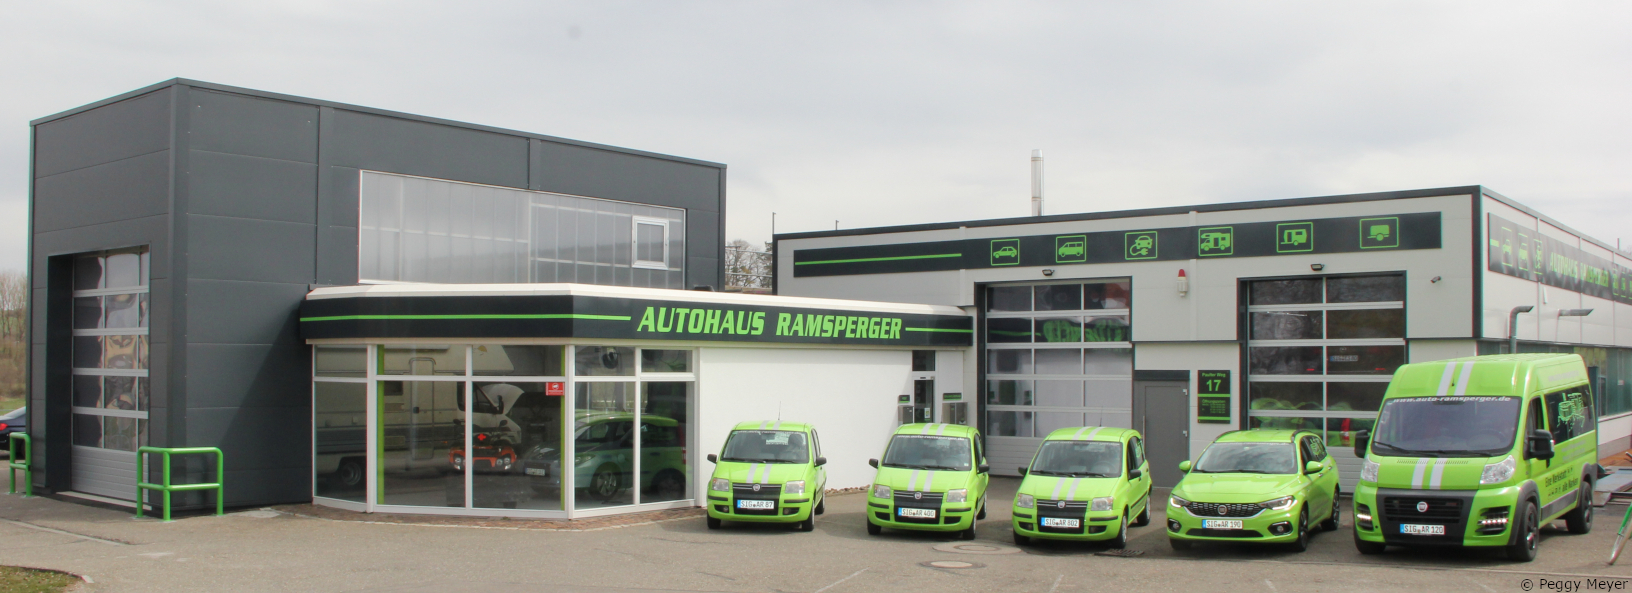 Autohaus Ramsperger - Ihr Spezialist für Service, Neuwagen, Gebrauchtwagen, Autogas